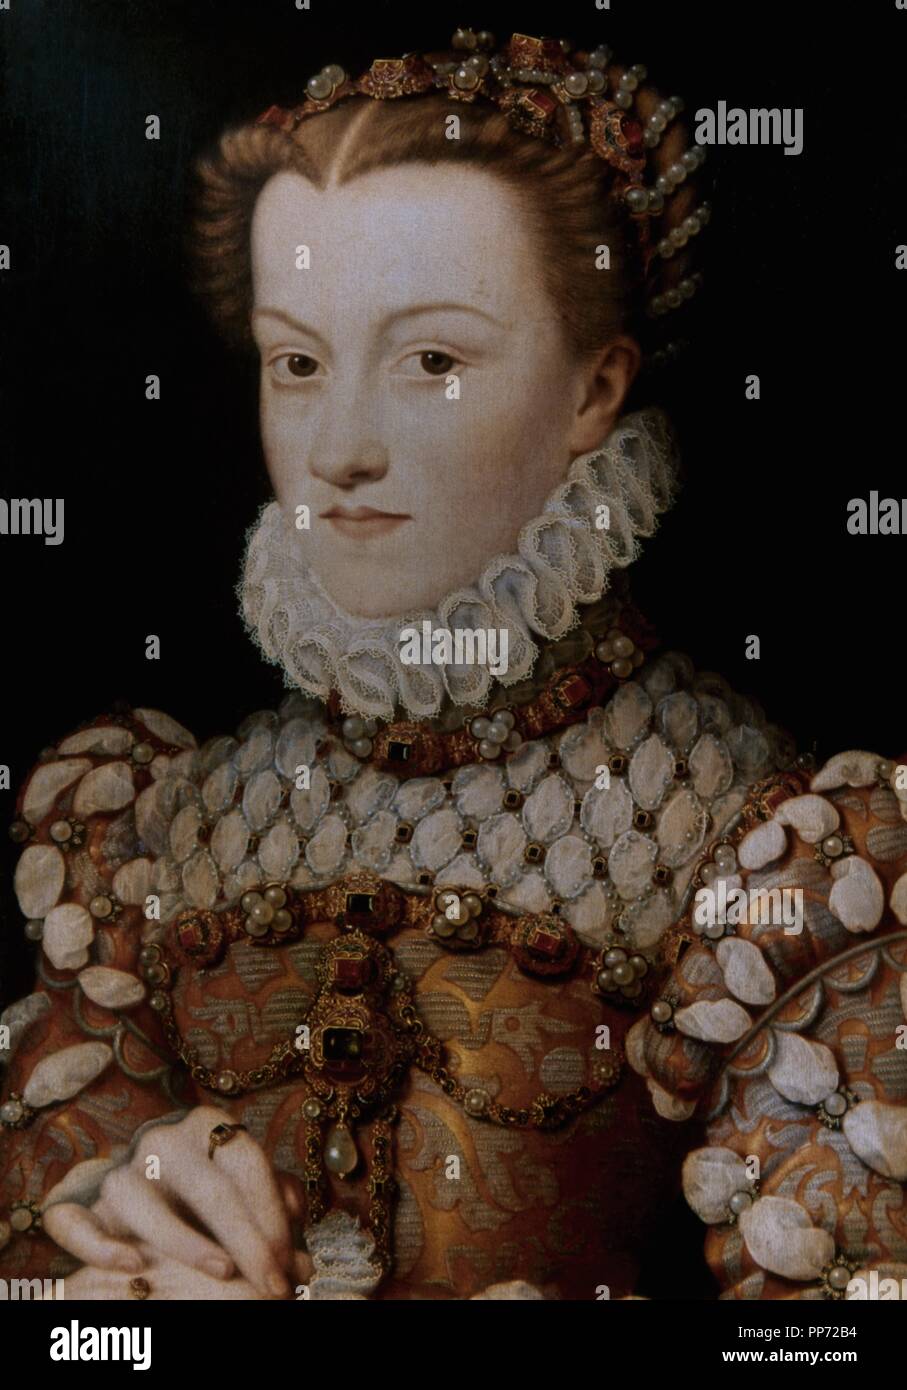 Elisabeth von Österreich (1554-1592), Königin von Frankreich. Porträt der französischen Renaissance Maler Franc ois Clouet (1510-1572), 1571. Museum des Louvre. Paris, Frankreich. Stockfoto